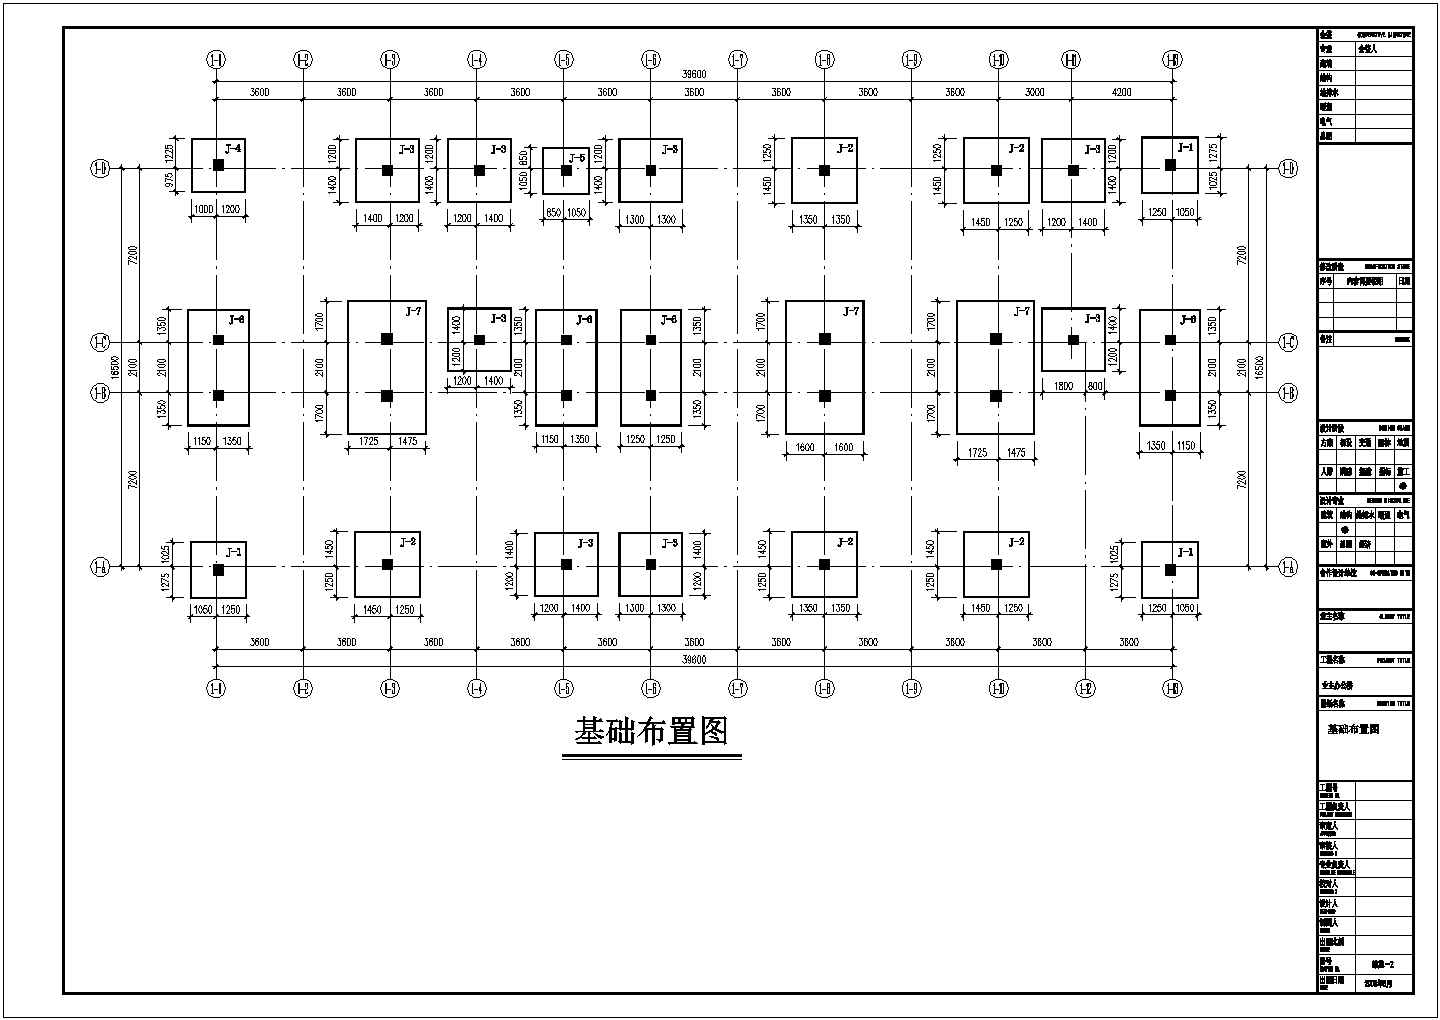 四层独立基础框架办公楼结构施工图(平法制图)